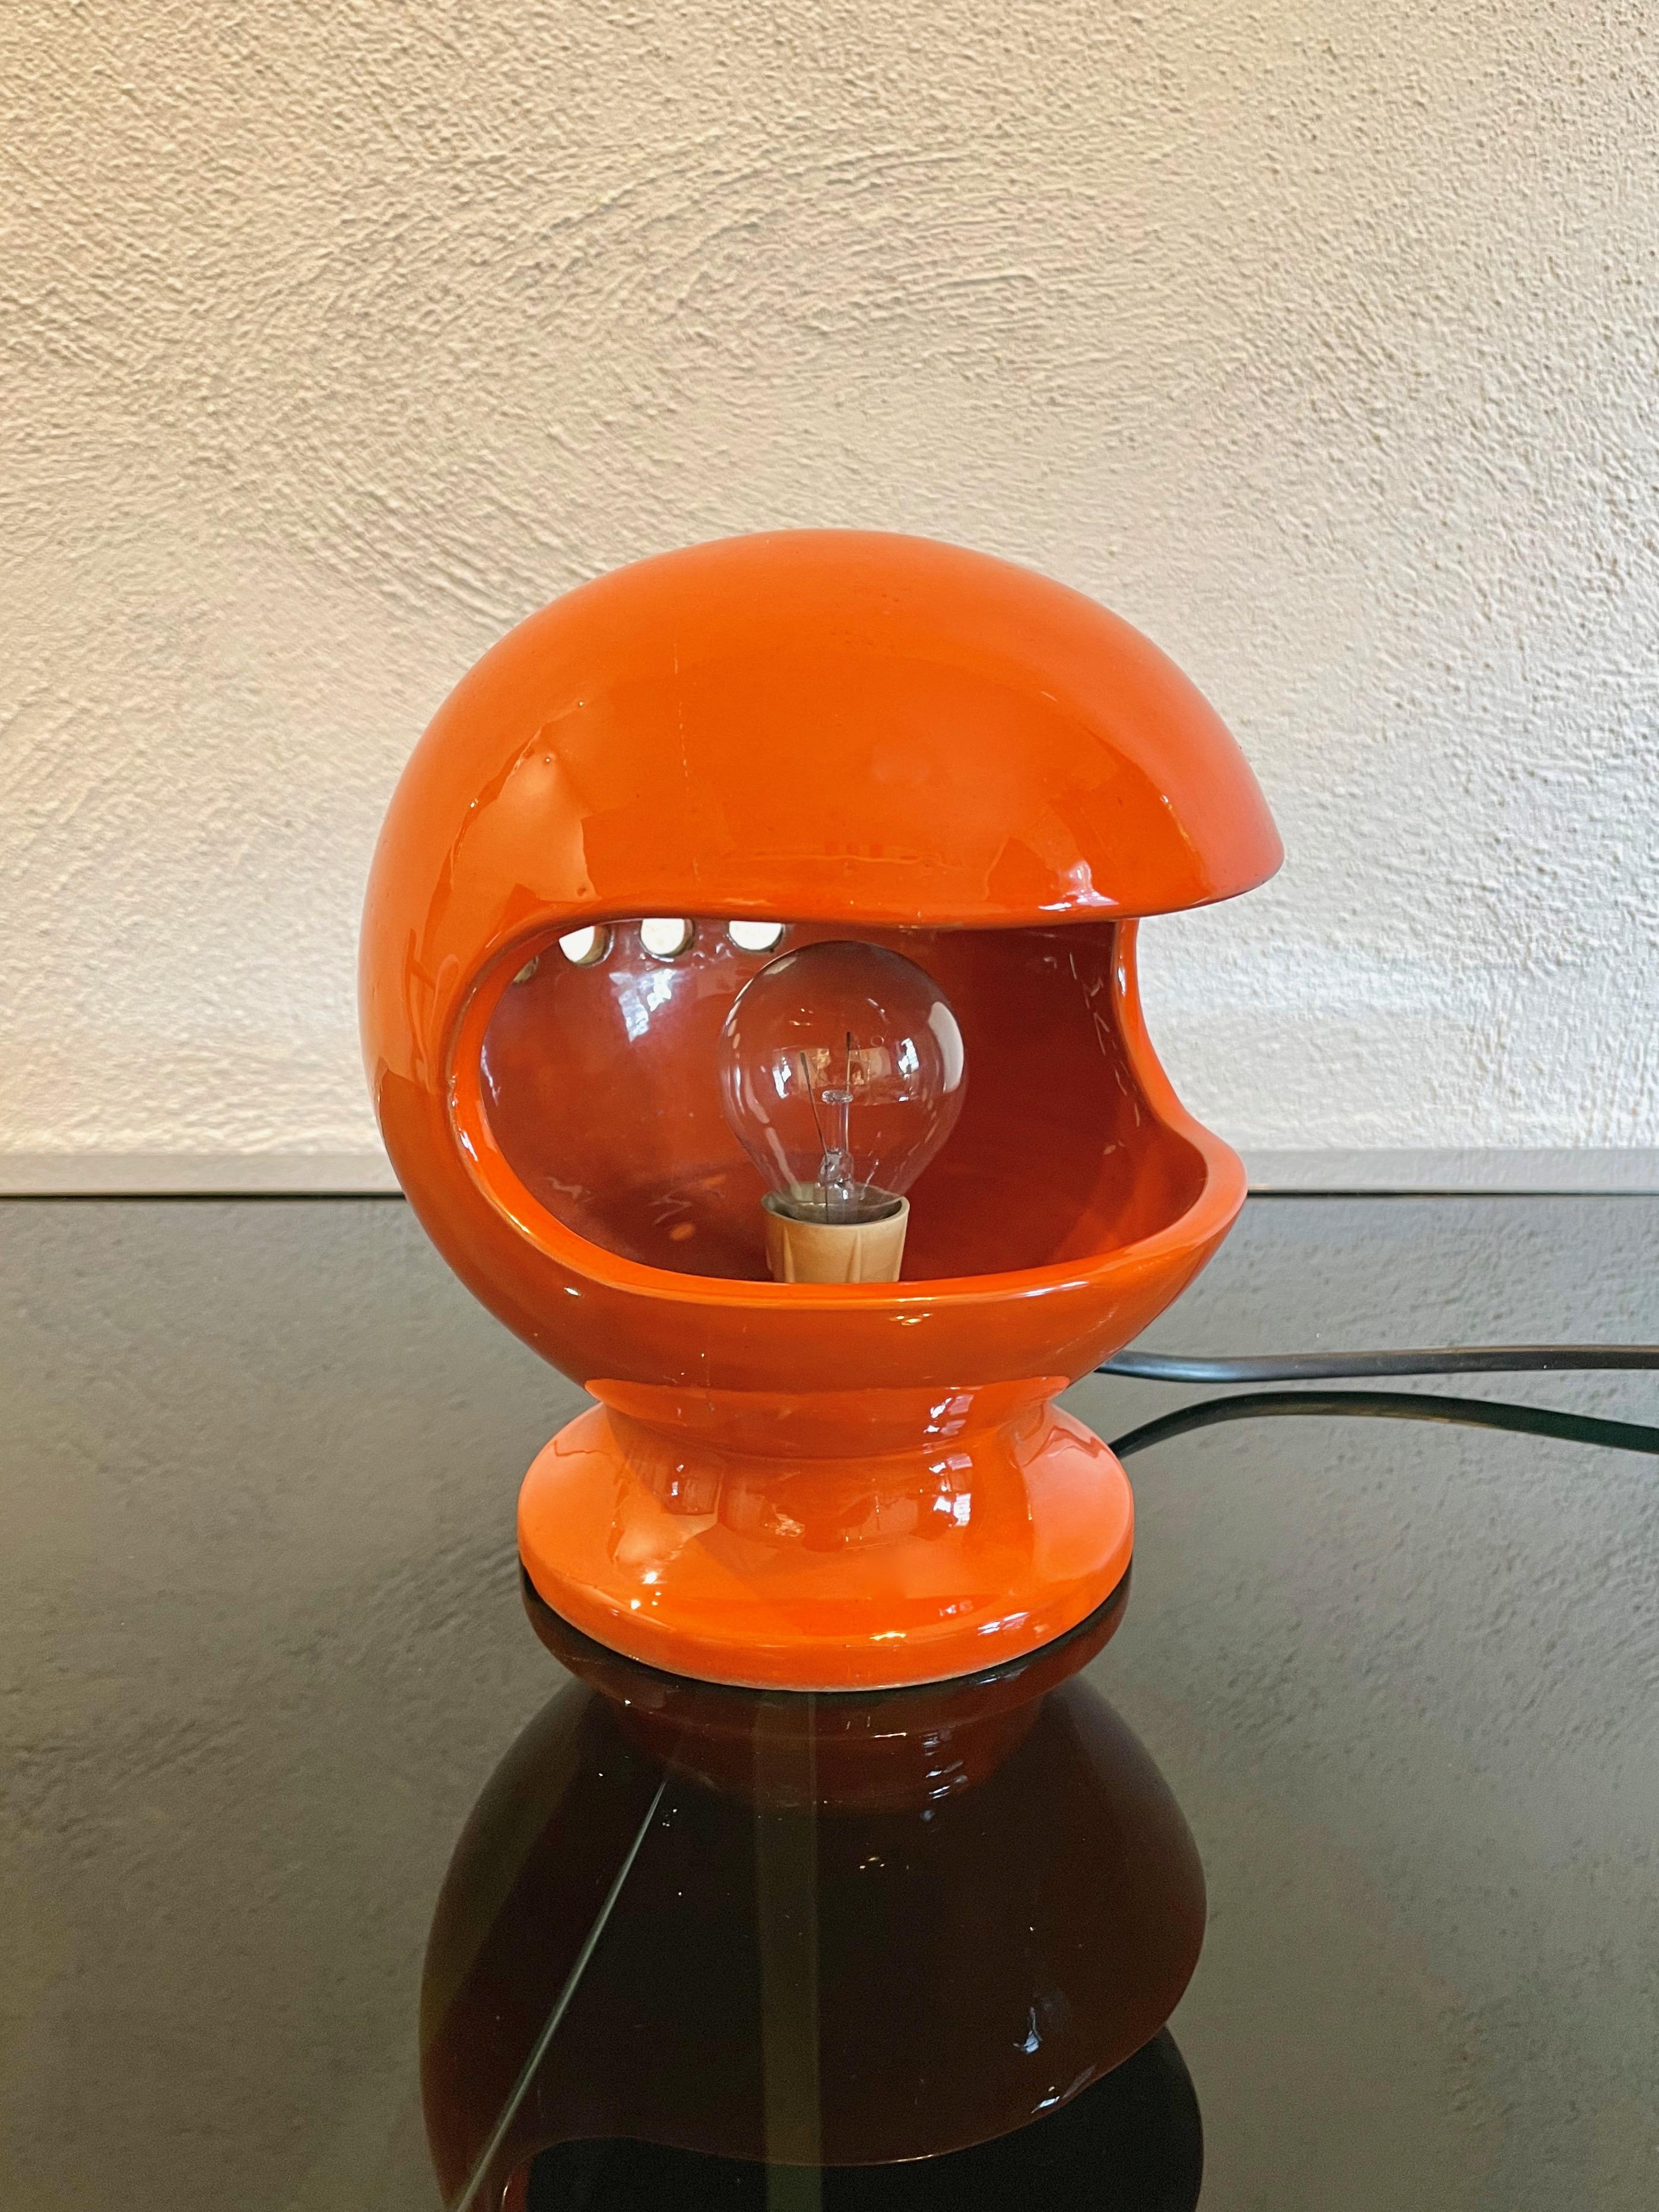 Lampe de table Space Age en céramique orange par Enzo Bioli pour Il Picchio. Fabriqué en Italie dans les années 1960. 

La signature originale indiquant 